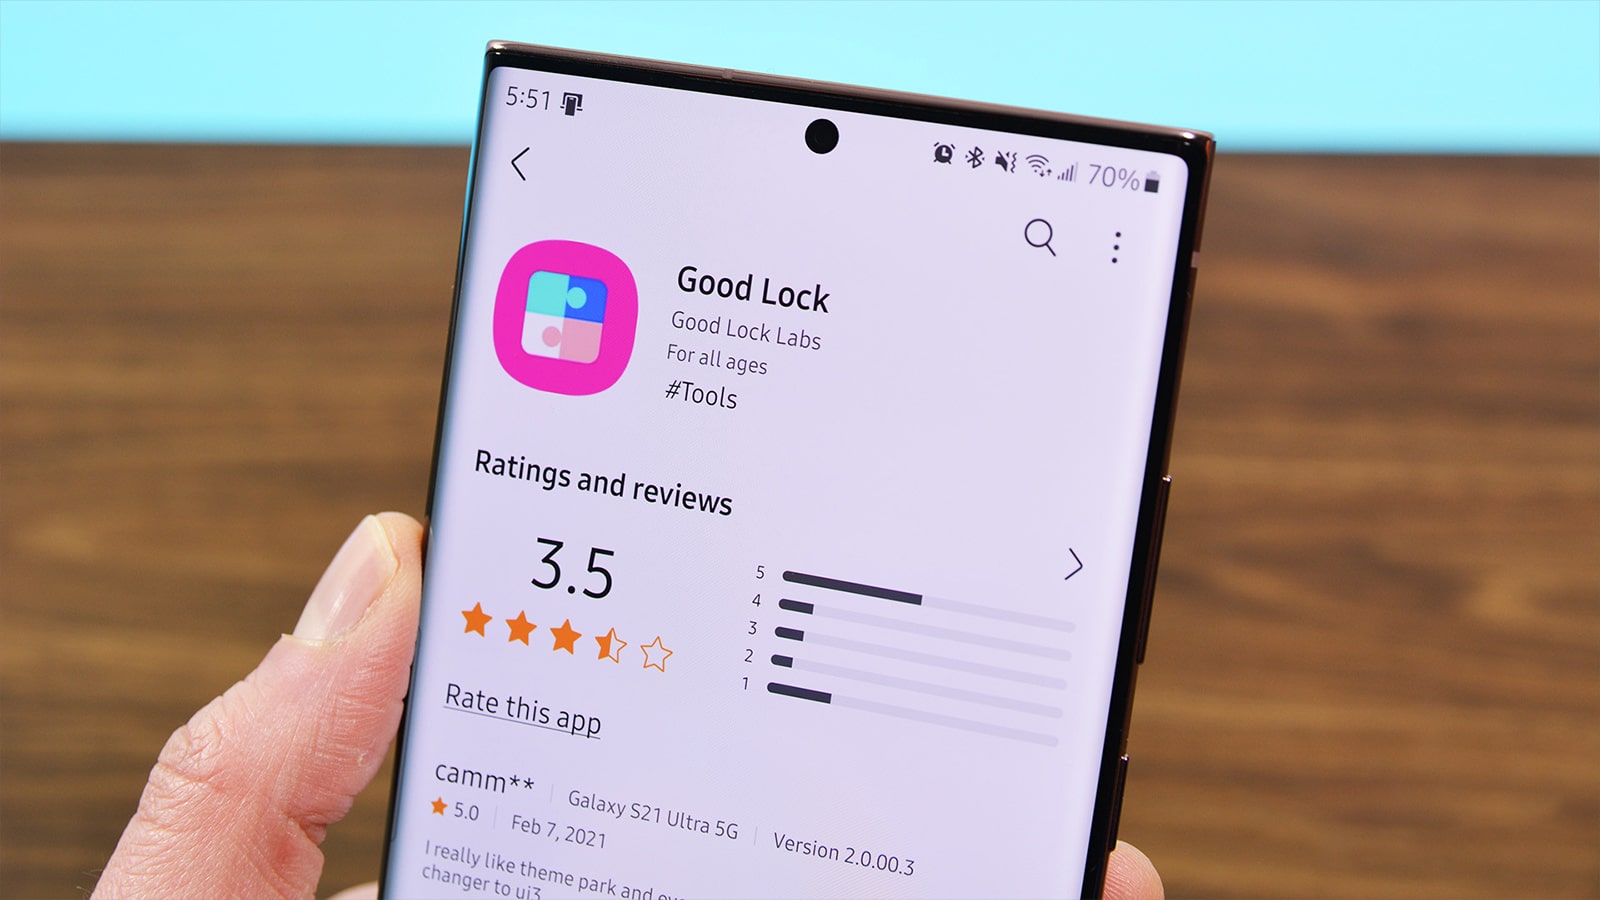 Ứng dụng tiện lợi Good Look trên Android